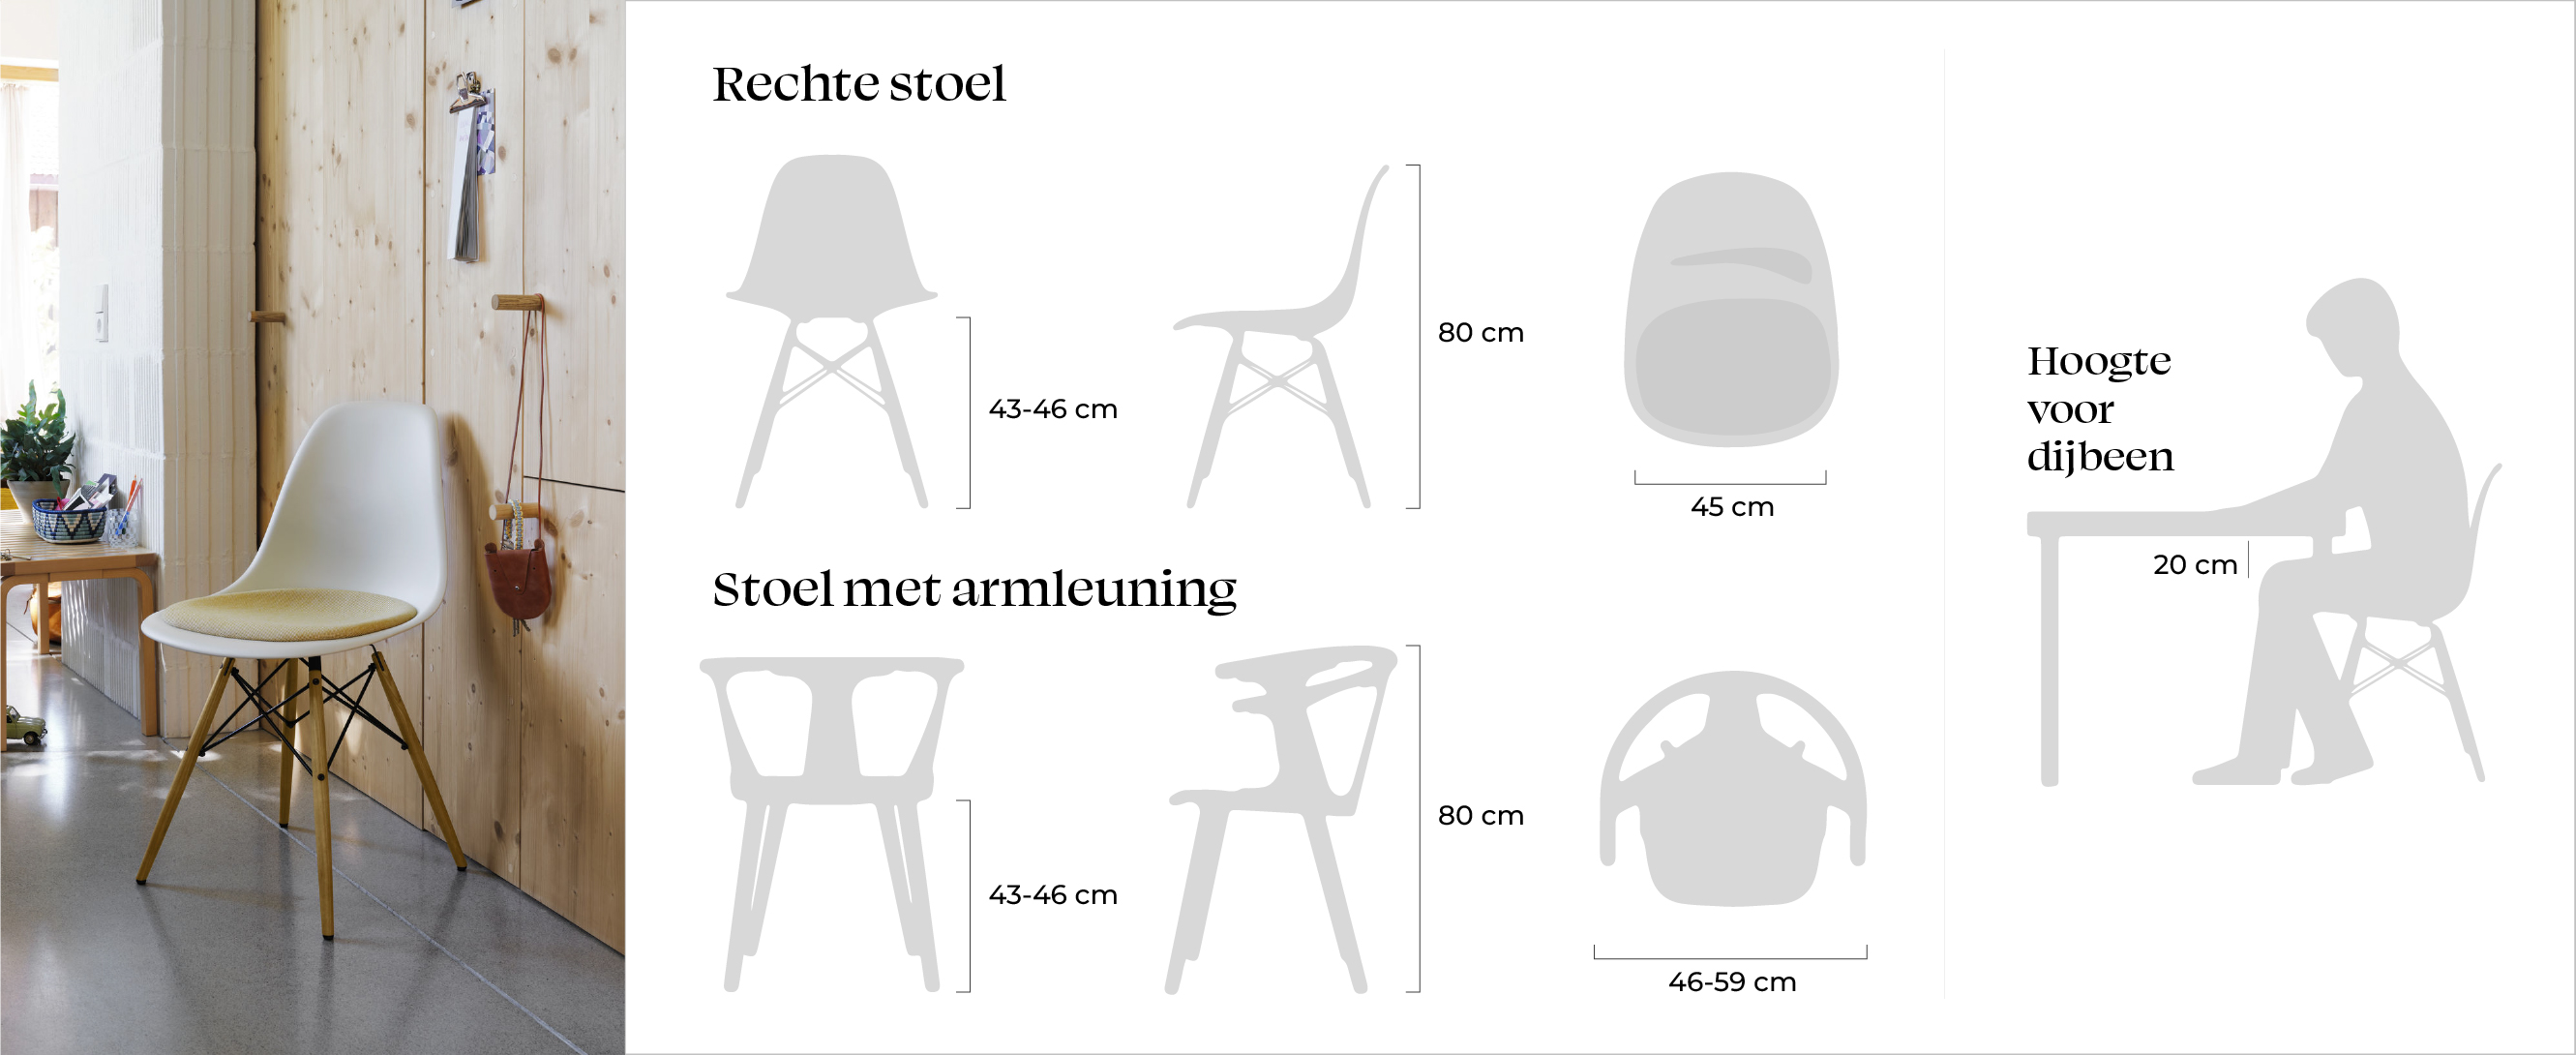 Hoe hoog en hoe breed is een stoel? Afmetingen van een ideale eetkamerstoel met en zonder armleuningen